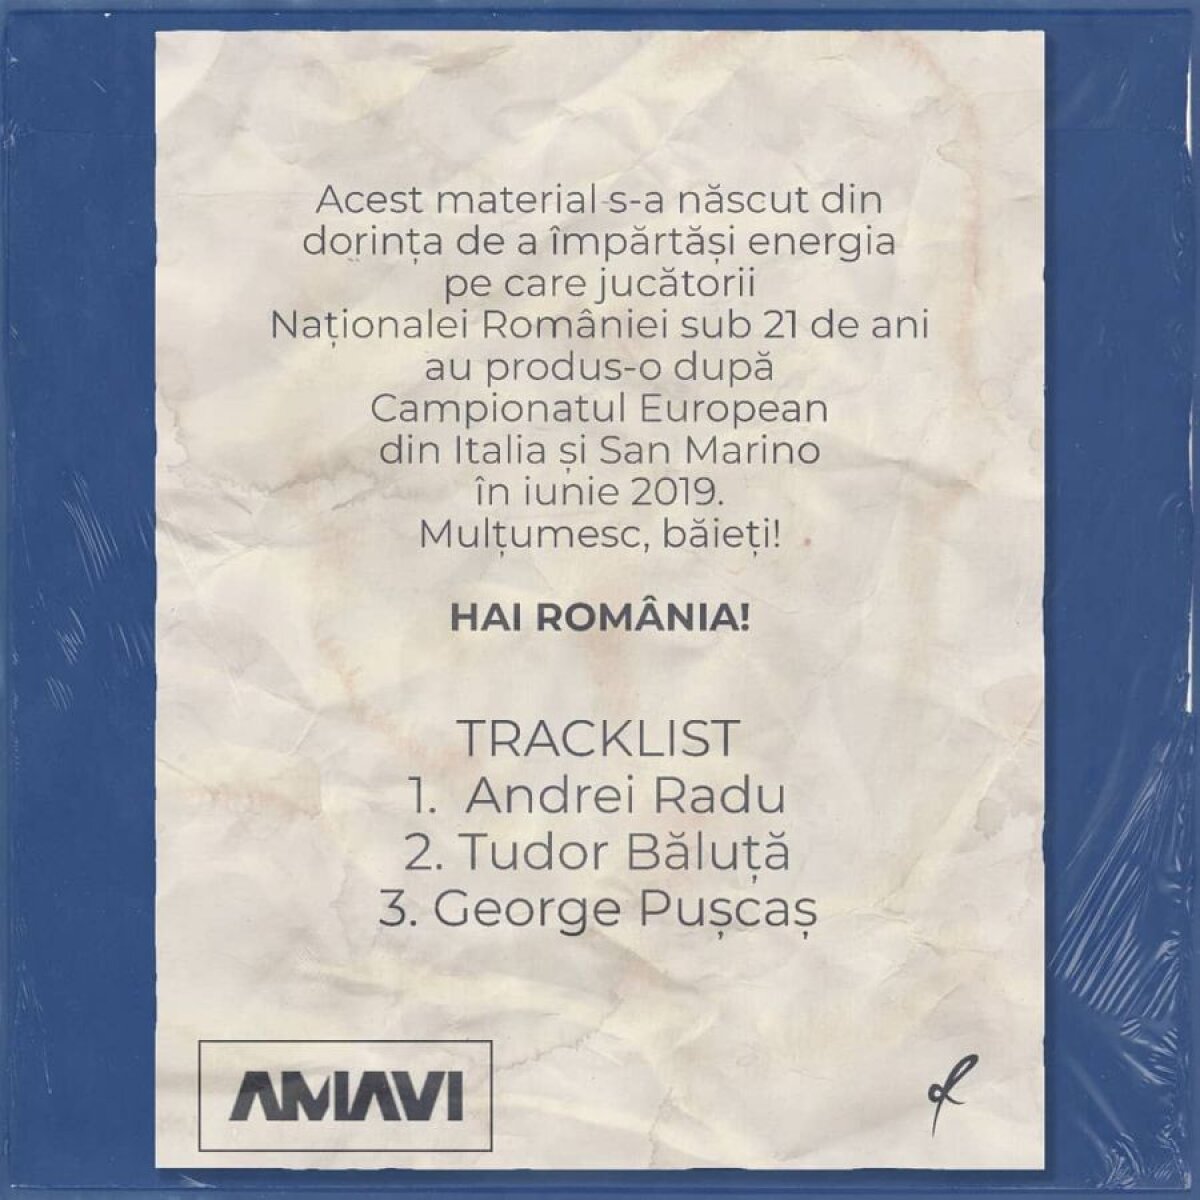 ROMÂNIA U21 // EXCLUSIV Un rapper român a compus trei melodii în cinstea „tricolorilor” » George Pușcaș, Andrei Radu și Tudor Băluță sunt protagoniștii! Ascultă-le AICI